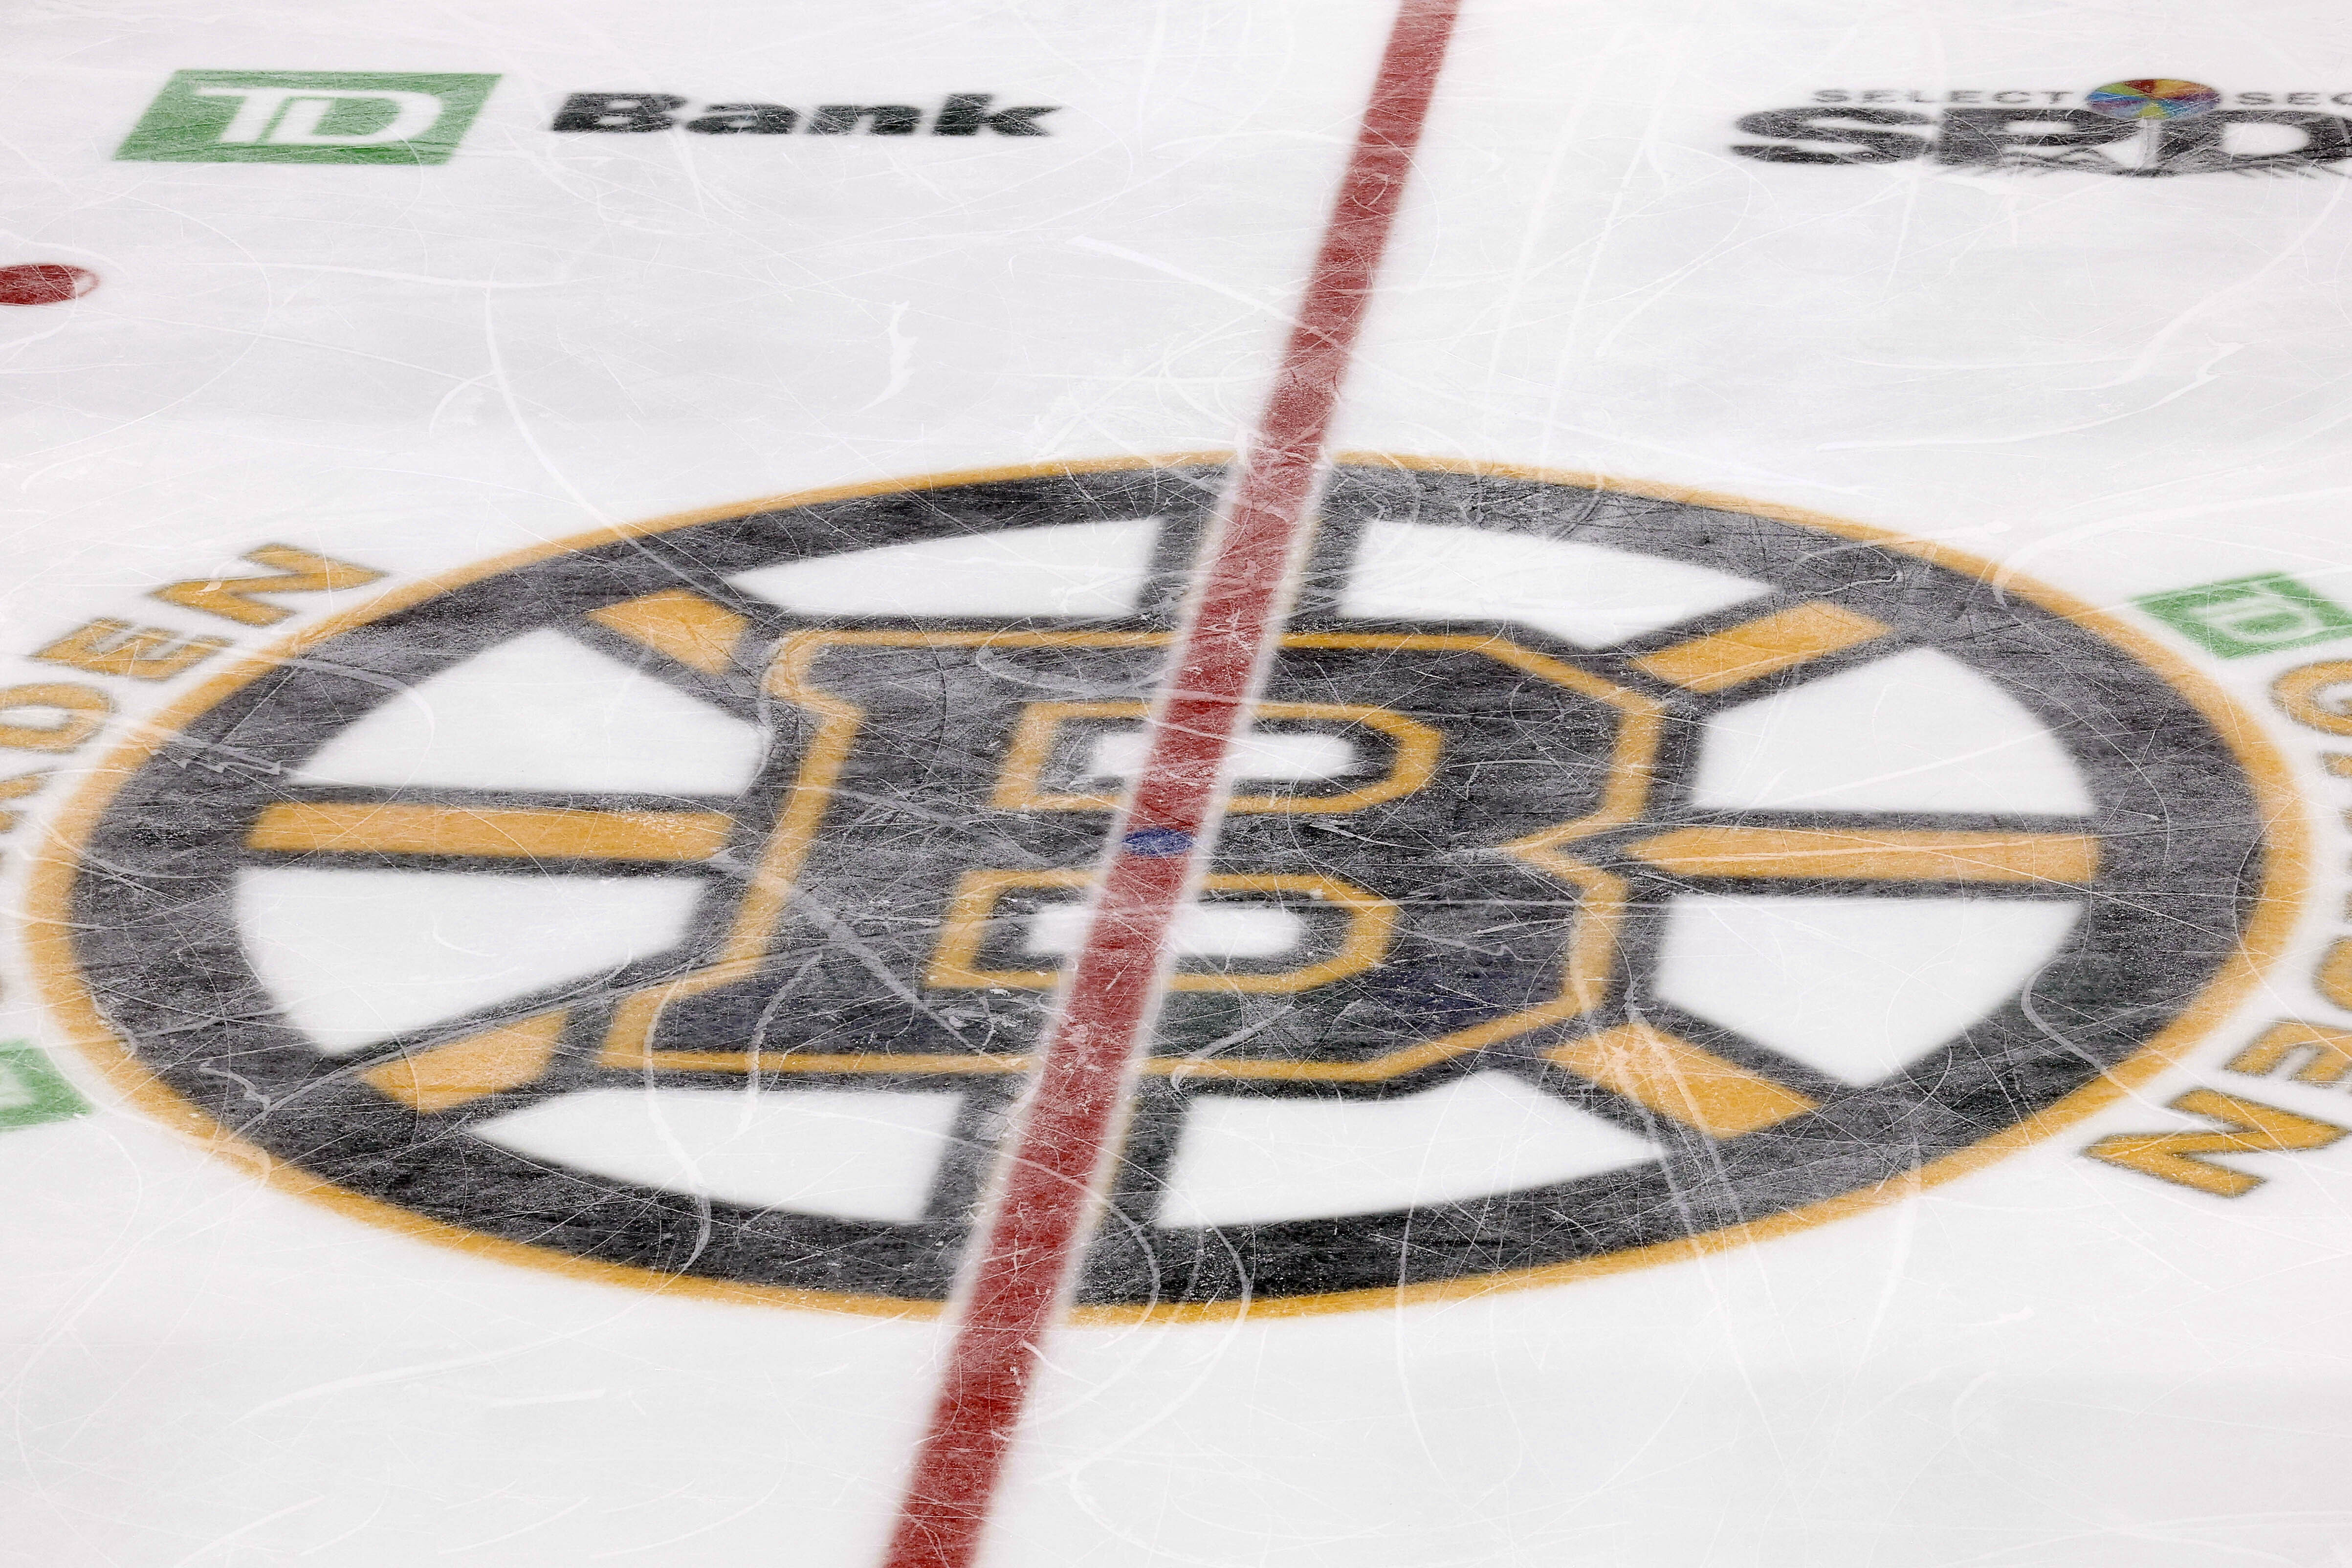 Boston Bruins 23-24 Season Preview 